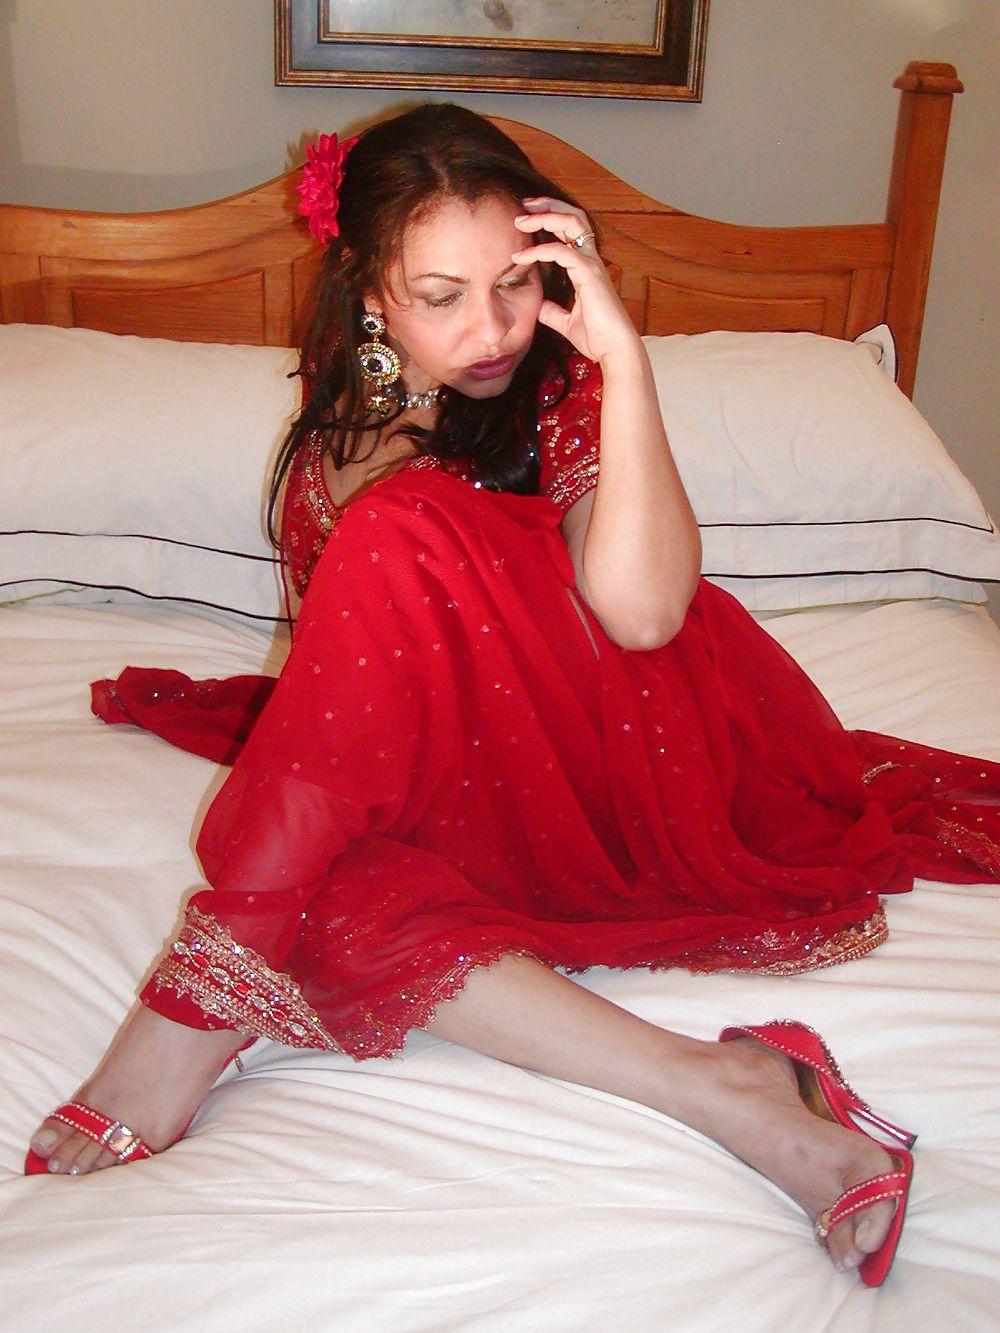 Playful Indian sari MILF uk